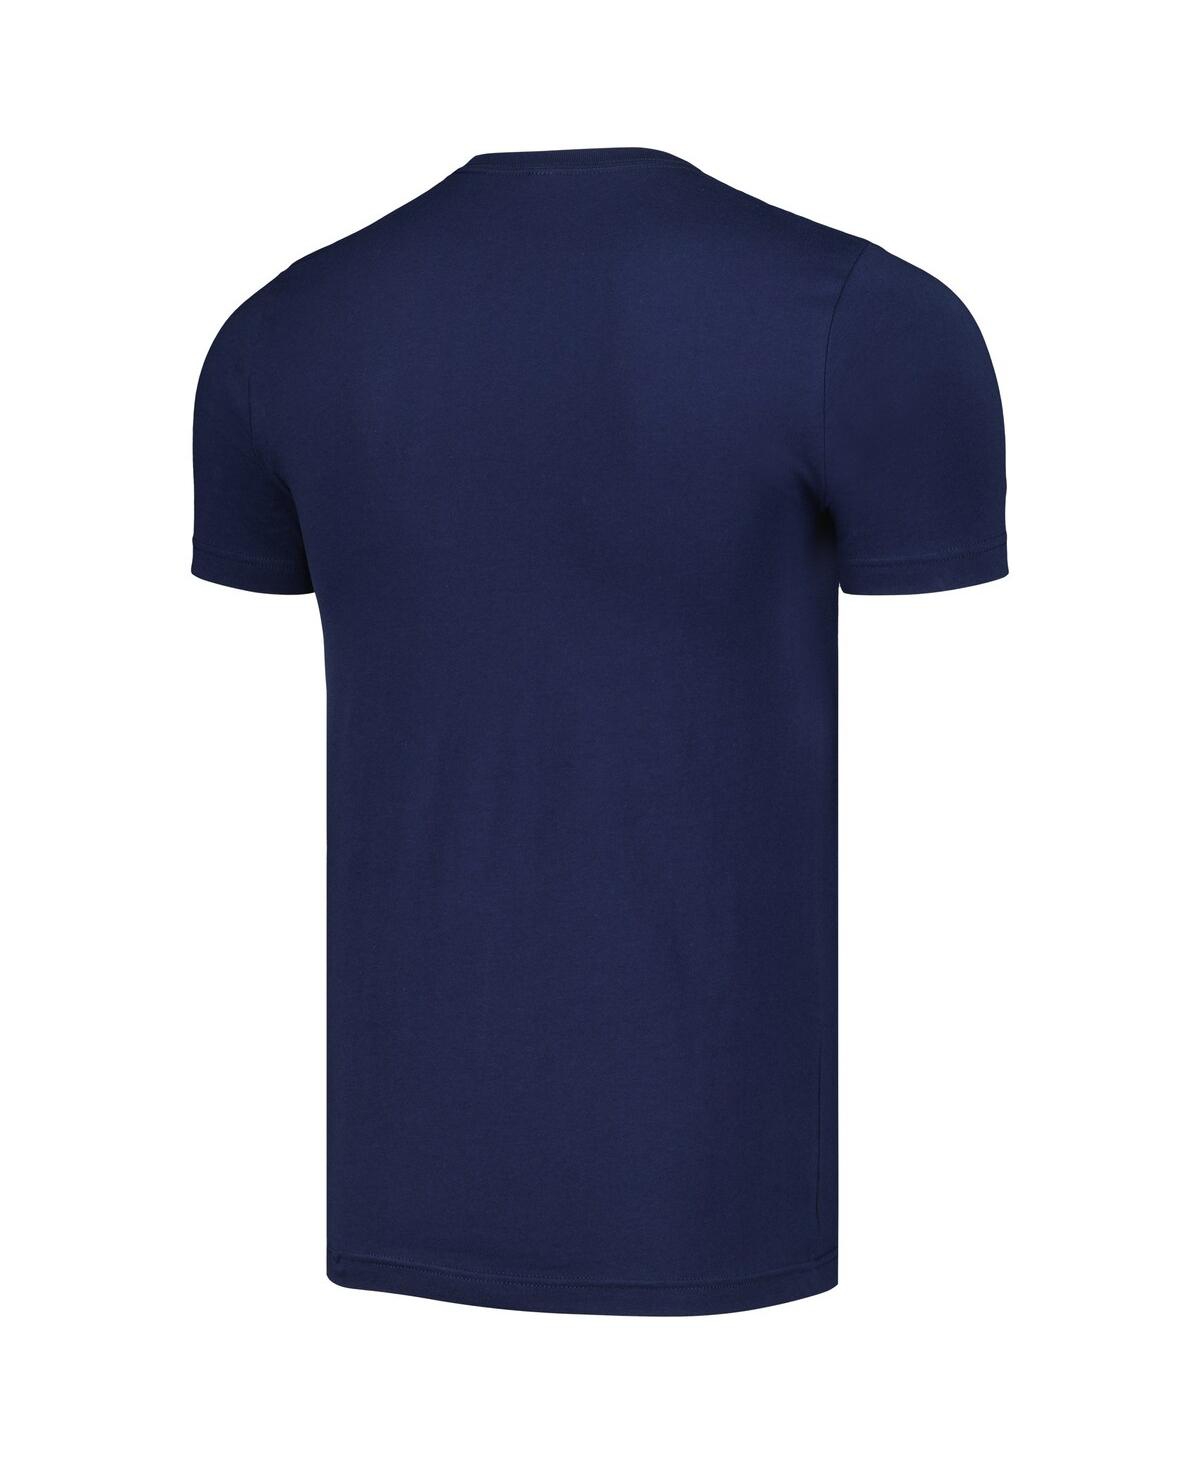 Shop Outerstuff Men's Navy Team Usa T-shirt